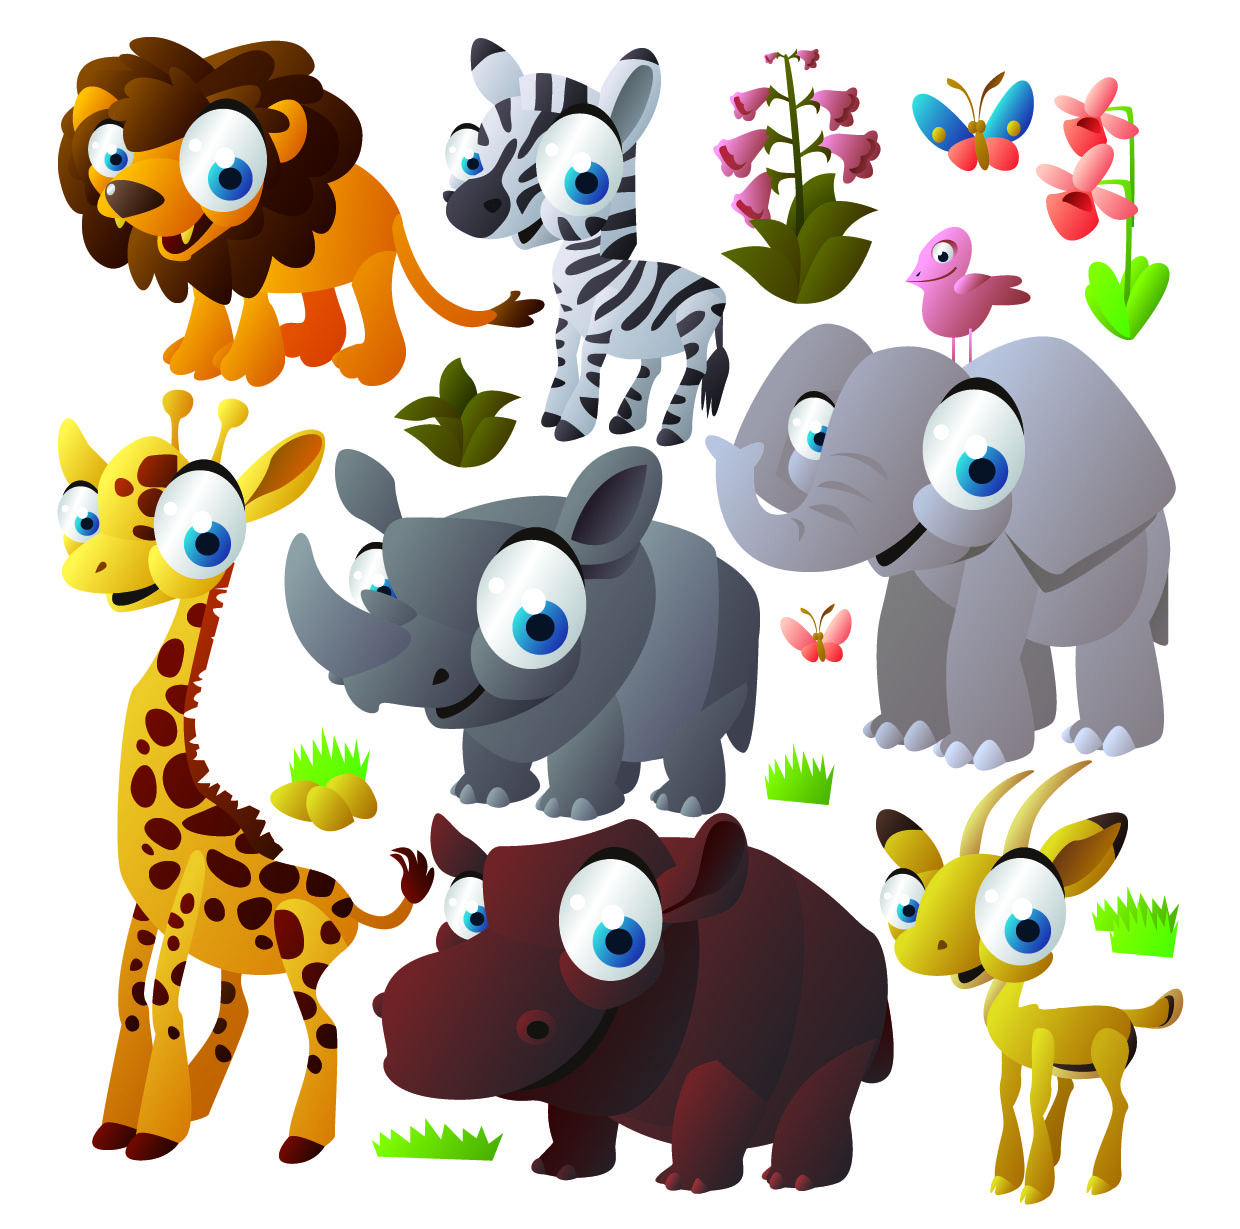 Cute cartoon animals vector Free Vector / 4Vector